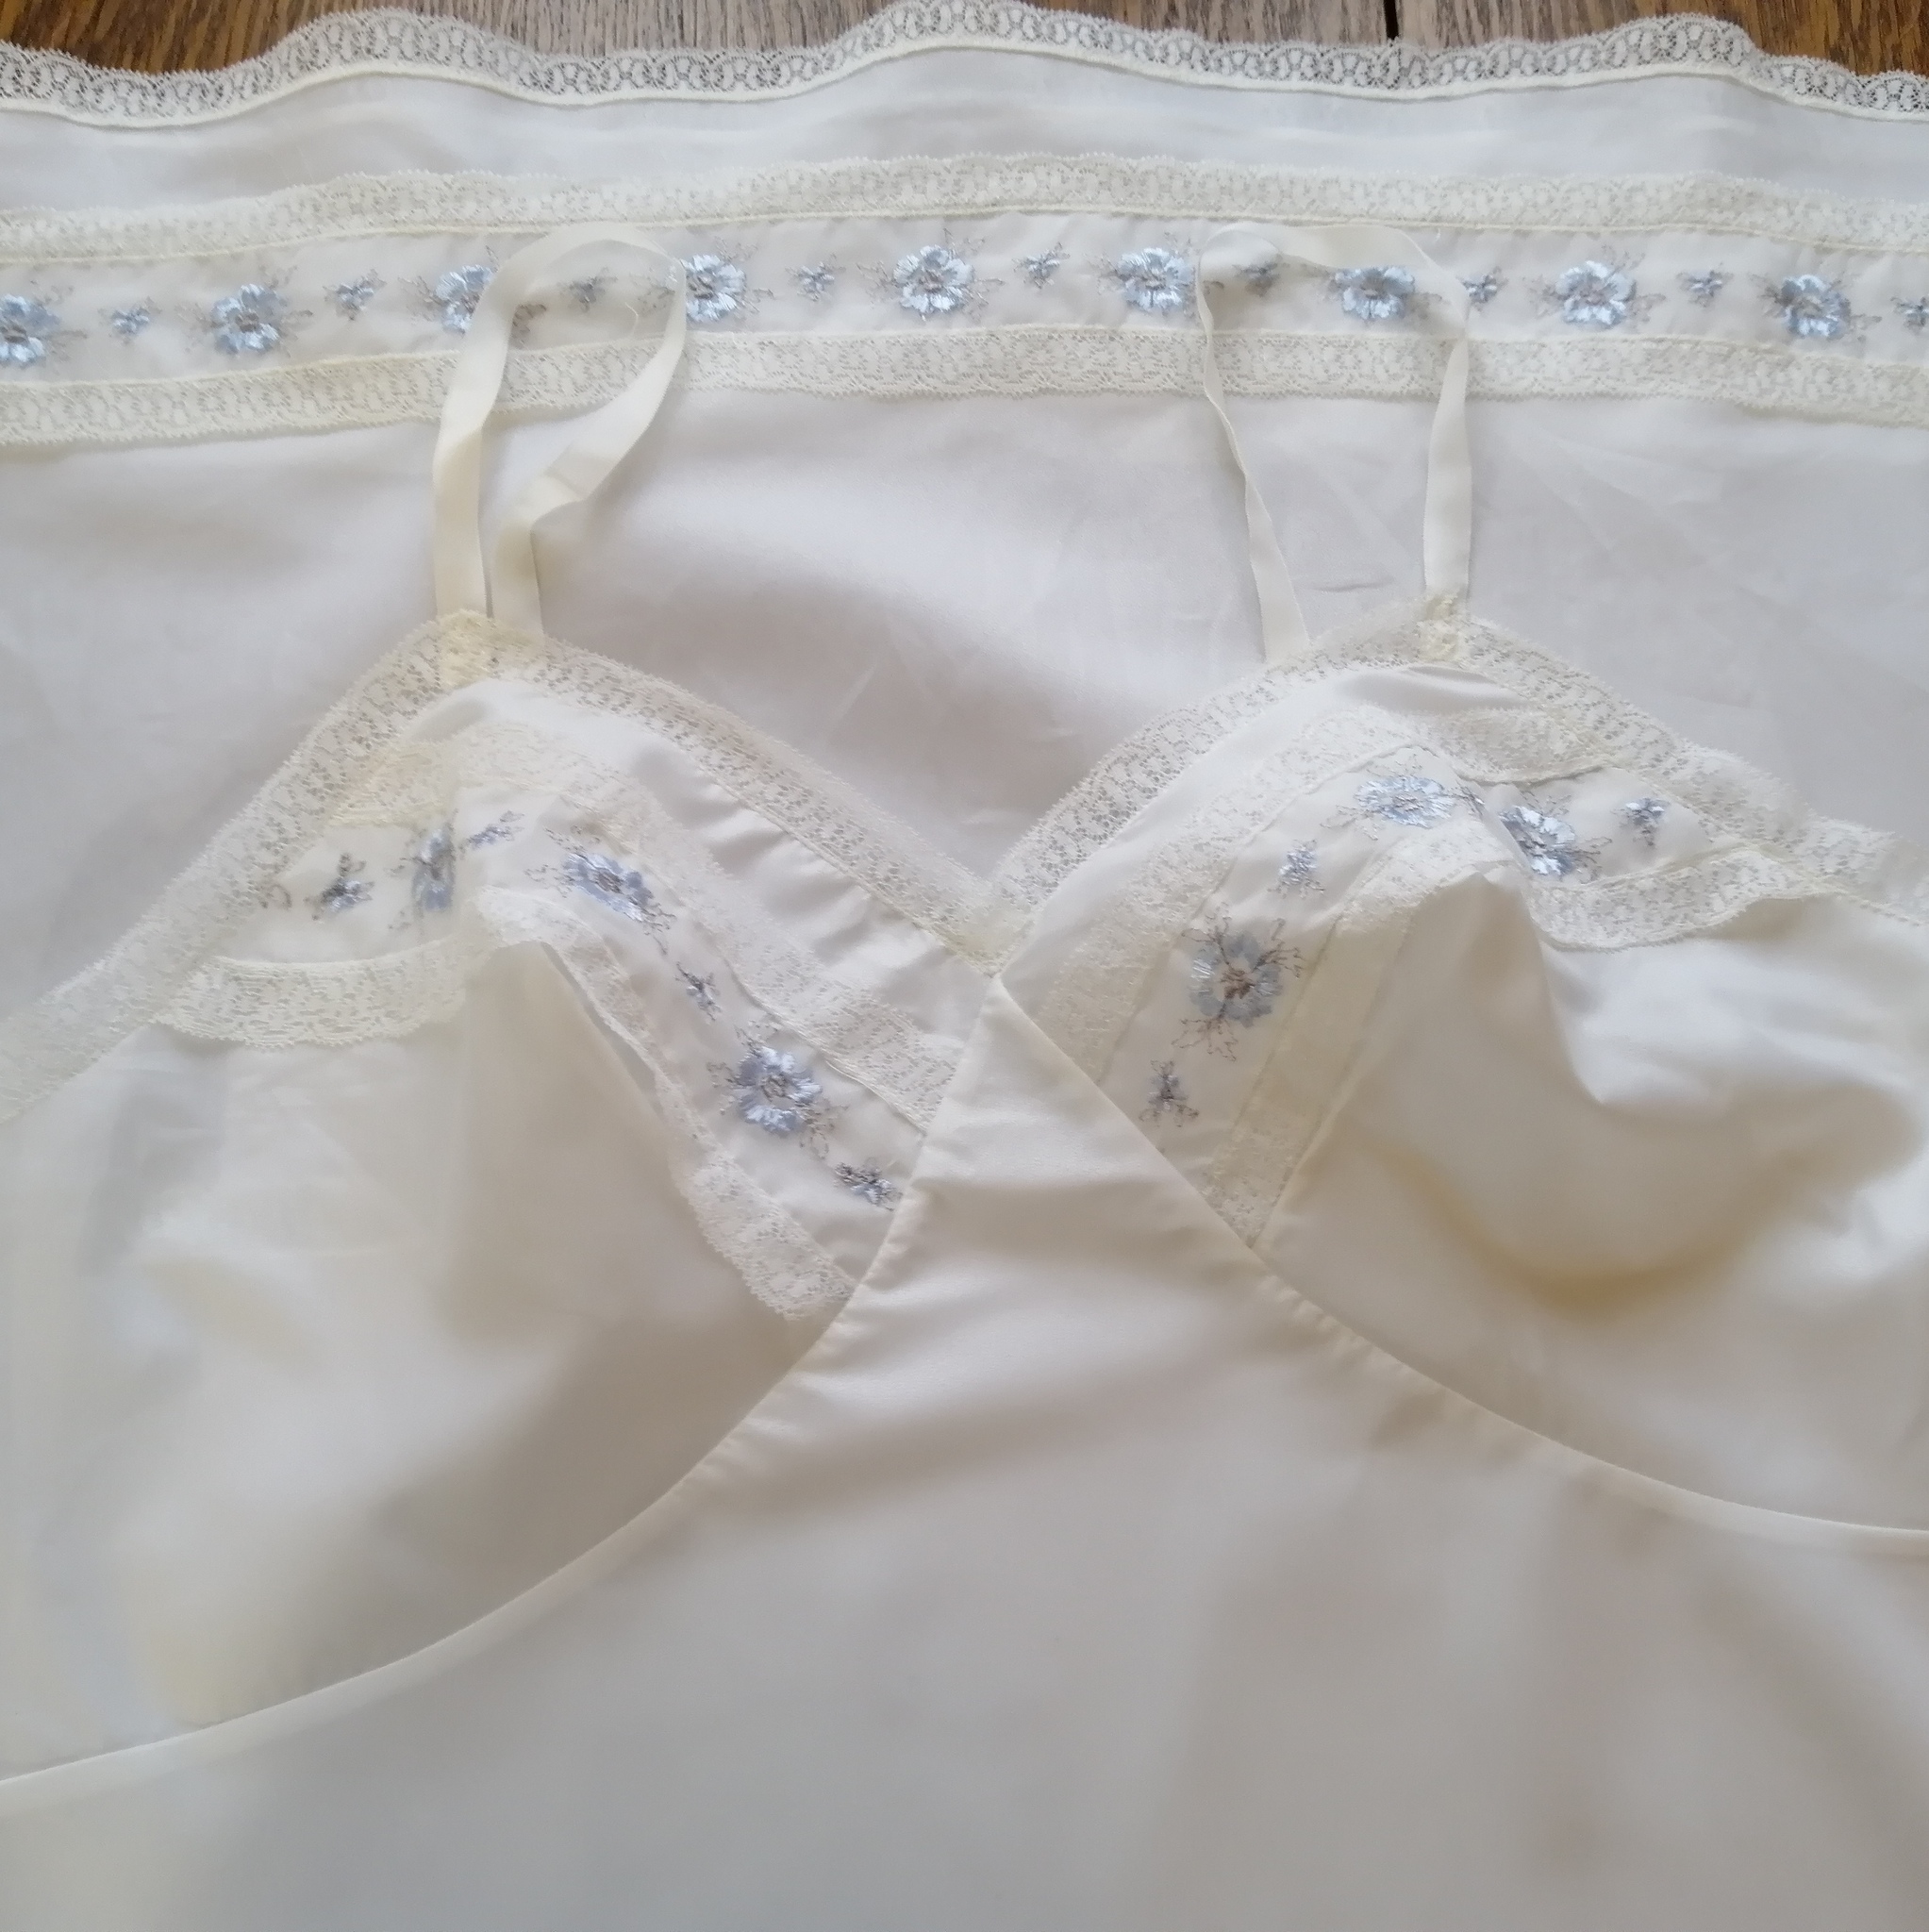 Vintage 60-tal Grace underklänning/nattlinne vit med broderade ljusblå blommor